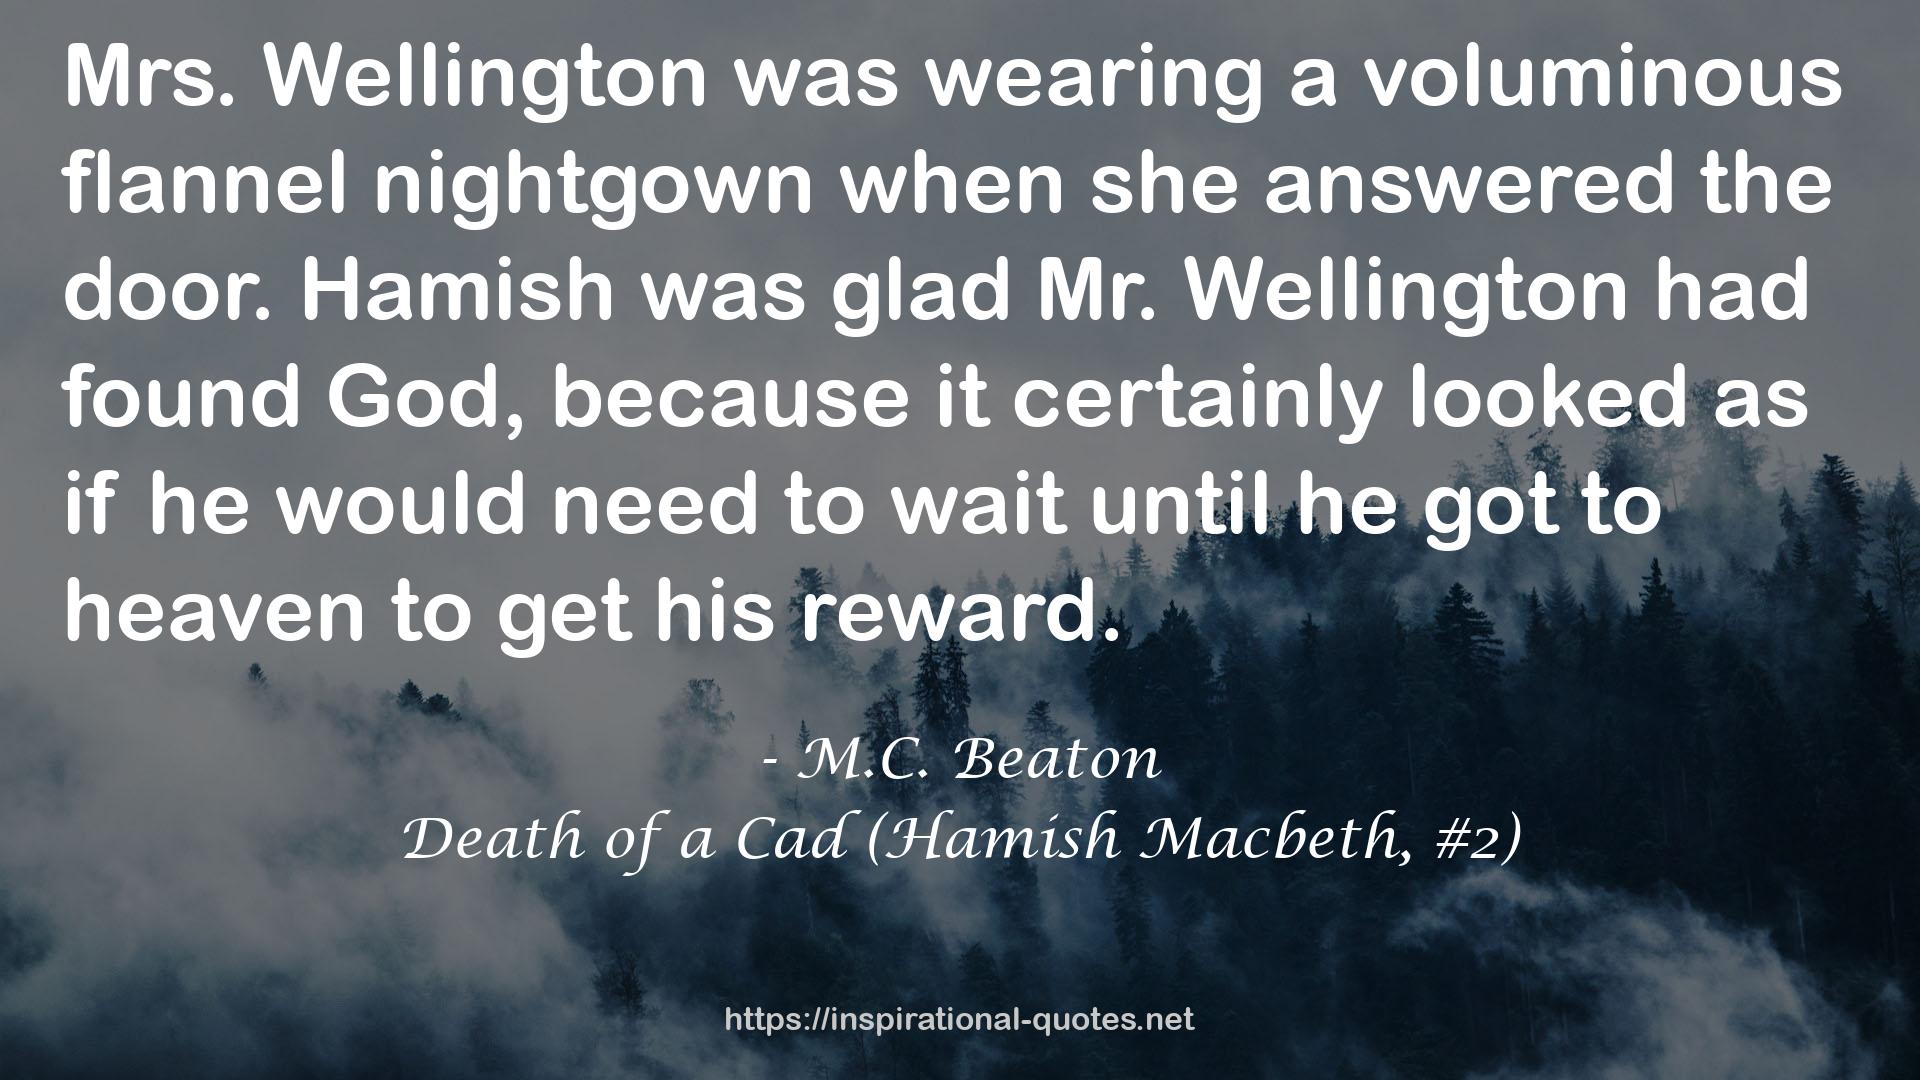 Death of a Cad (Hamish Macbeth, #2) QUOTES